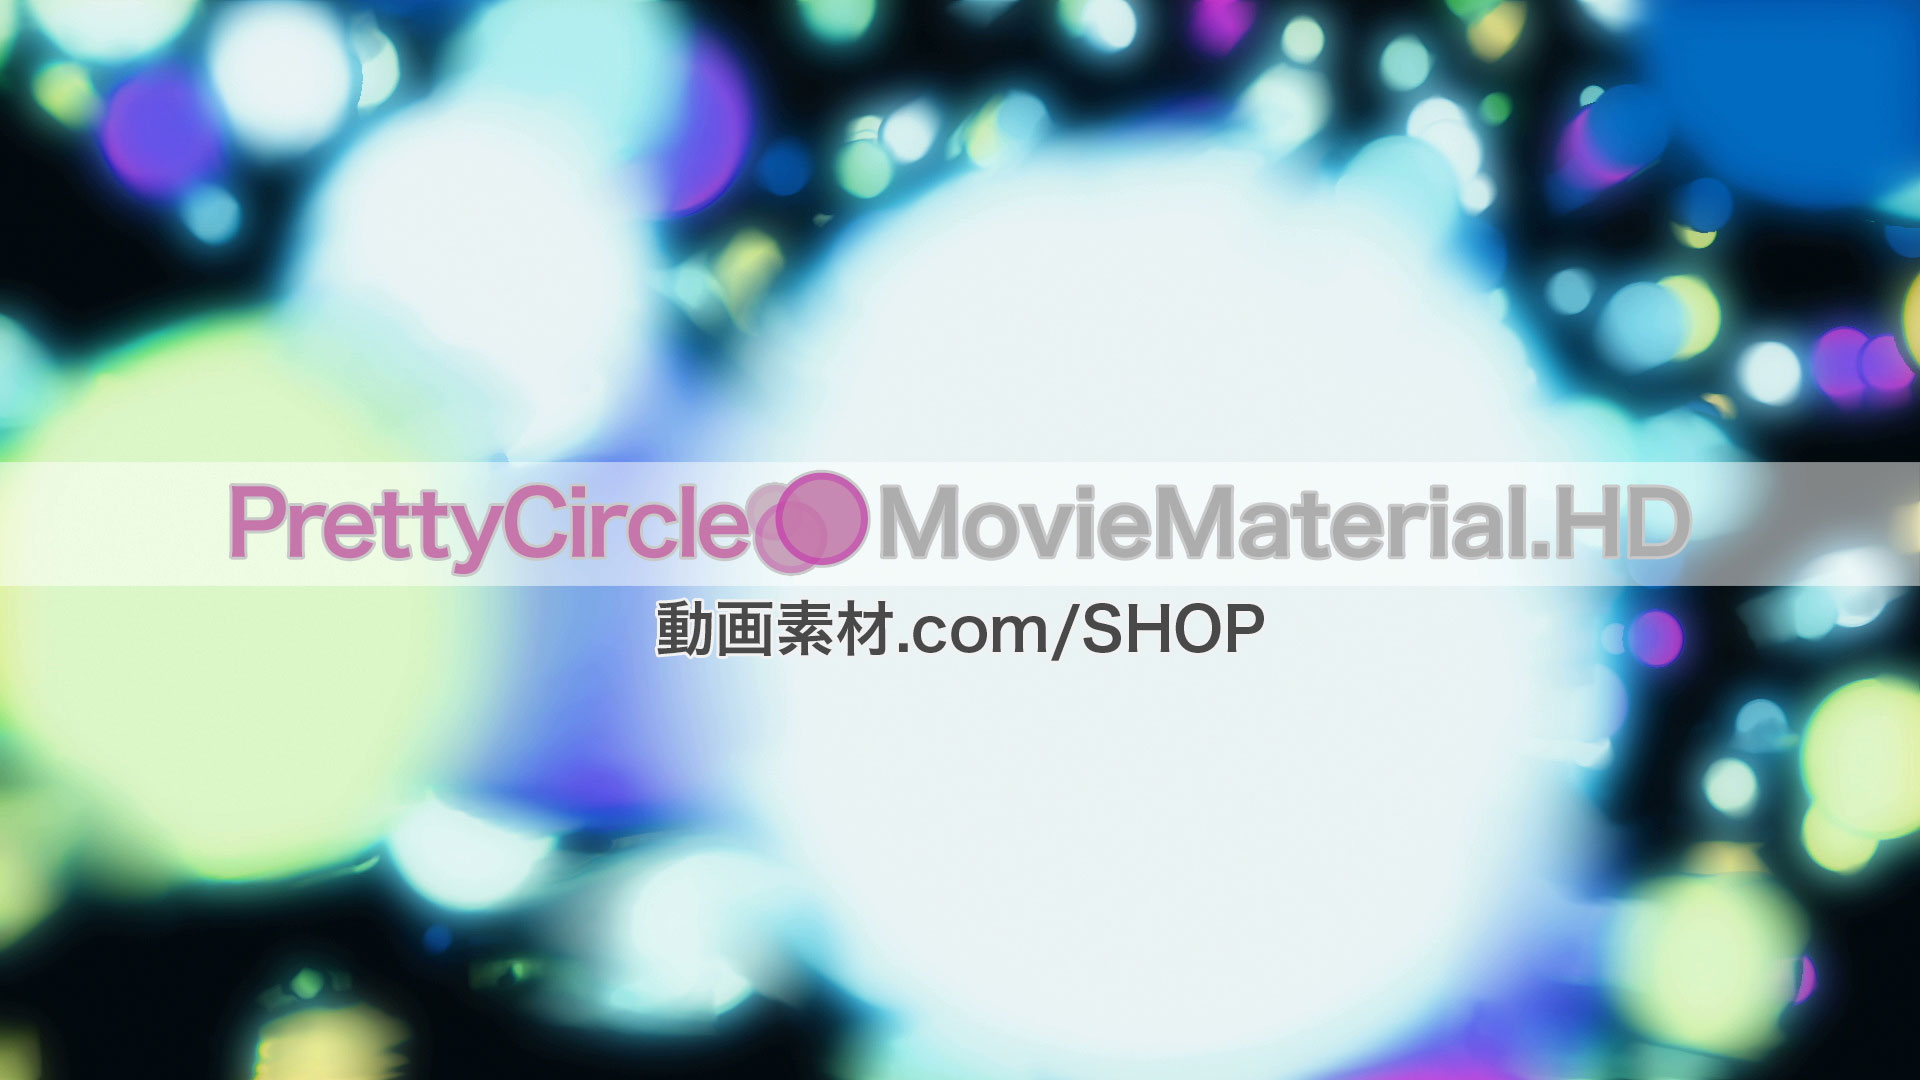 PrettyCircle MovieMaterial.HD 丸や玉をモチーフにしたフルハイビジョンCG動画素材集 ロイヤリティフリーimage1